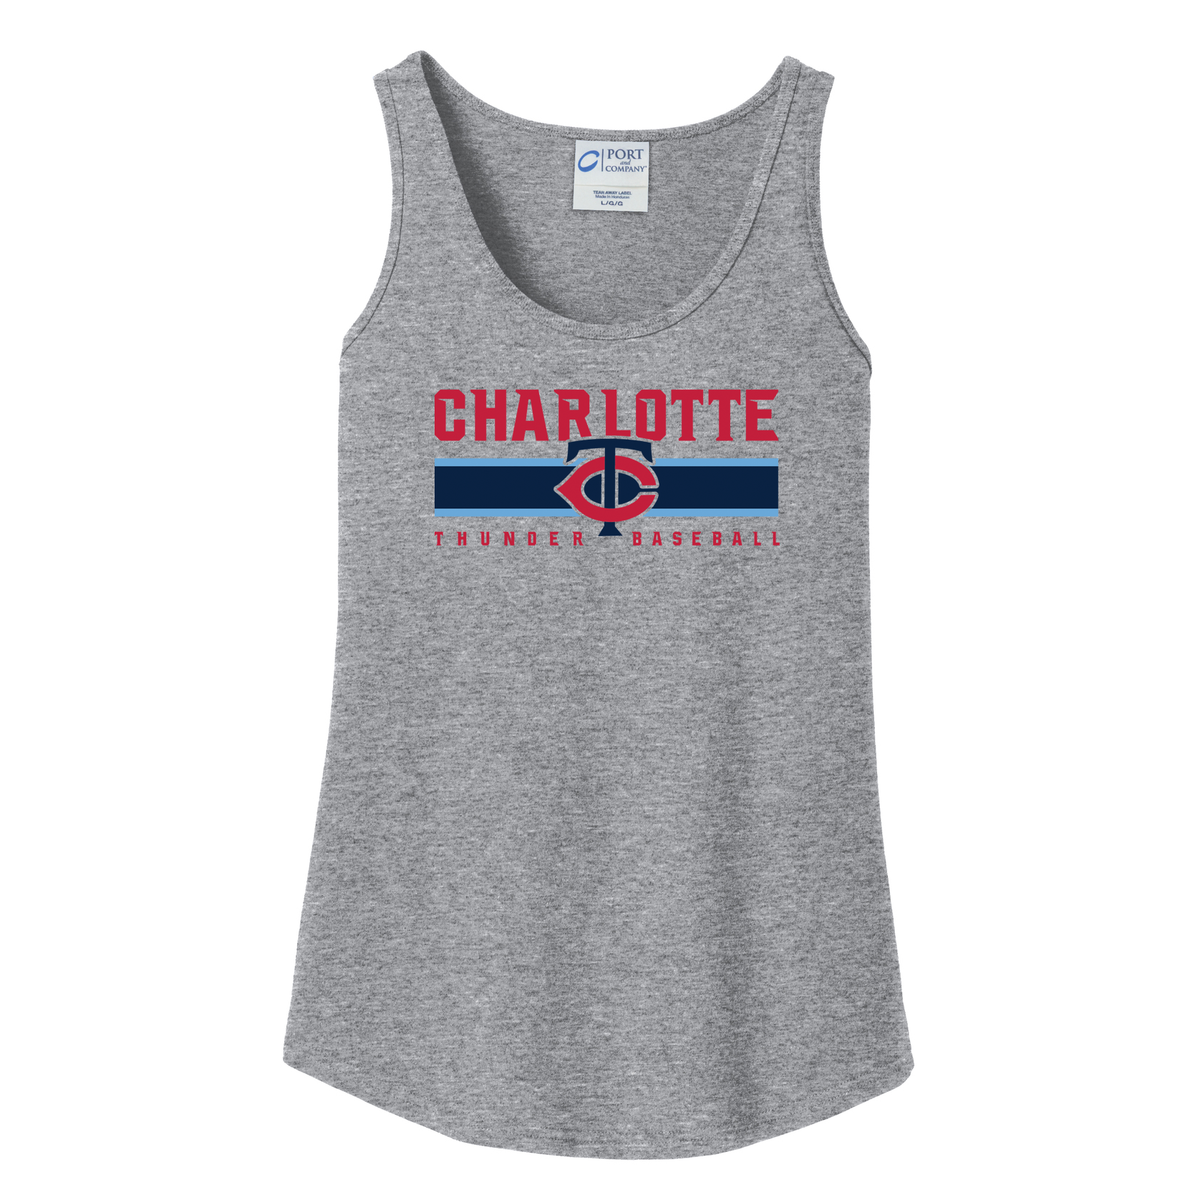 Charlotte Thunder Baseball  Women's Tank Top